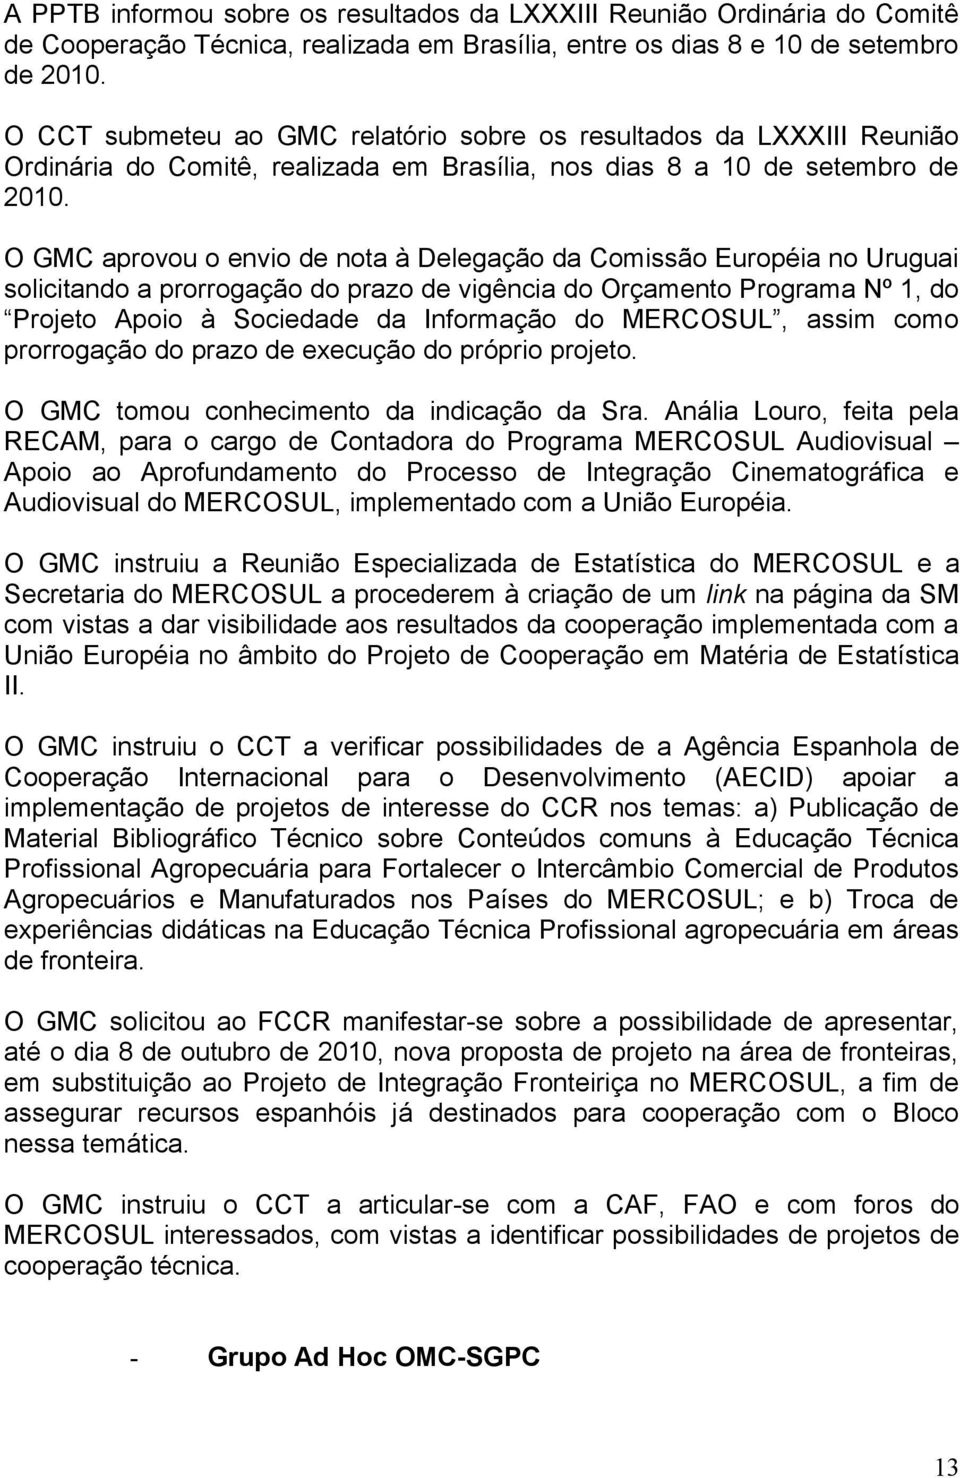 O GMC aprovou o envio de nota à Delegação da Comissão Européia no Uruguai solicitando a prorrogação do prazo de vigência do Orçamento Programa Nº 1, do Projeto Apoio à Sociedade da Informação do